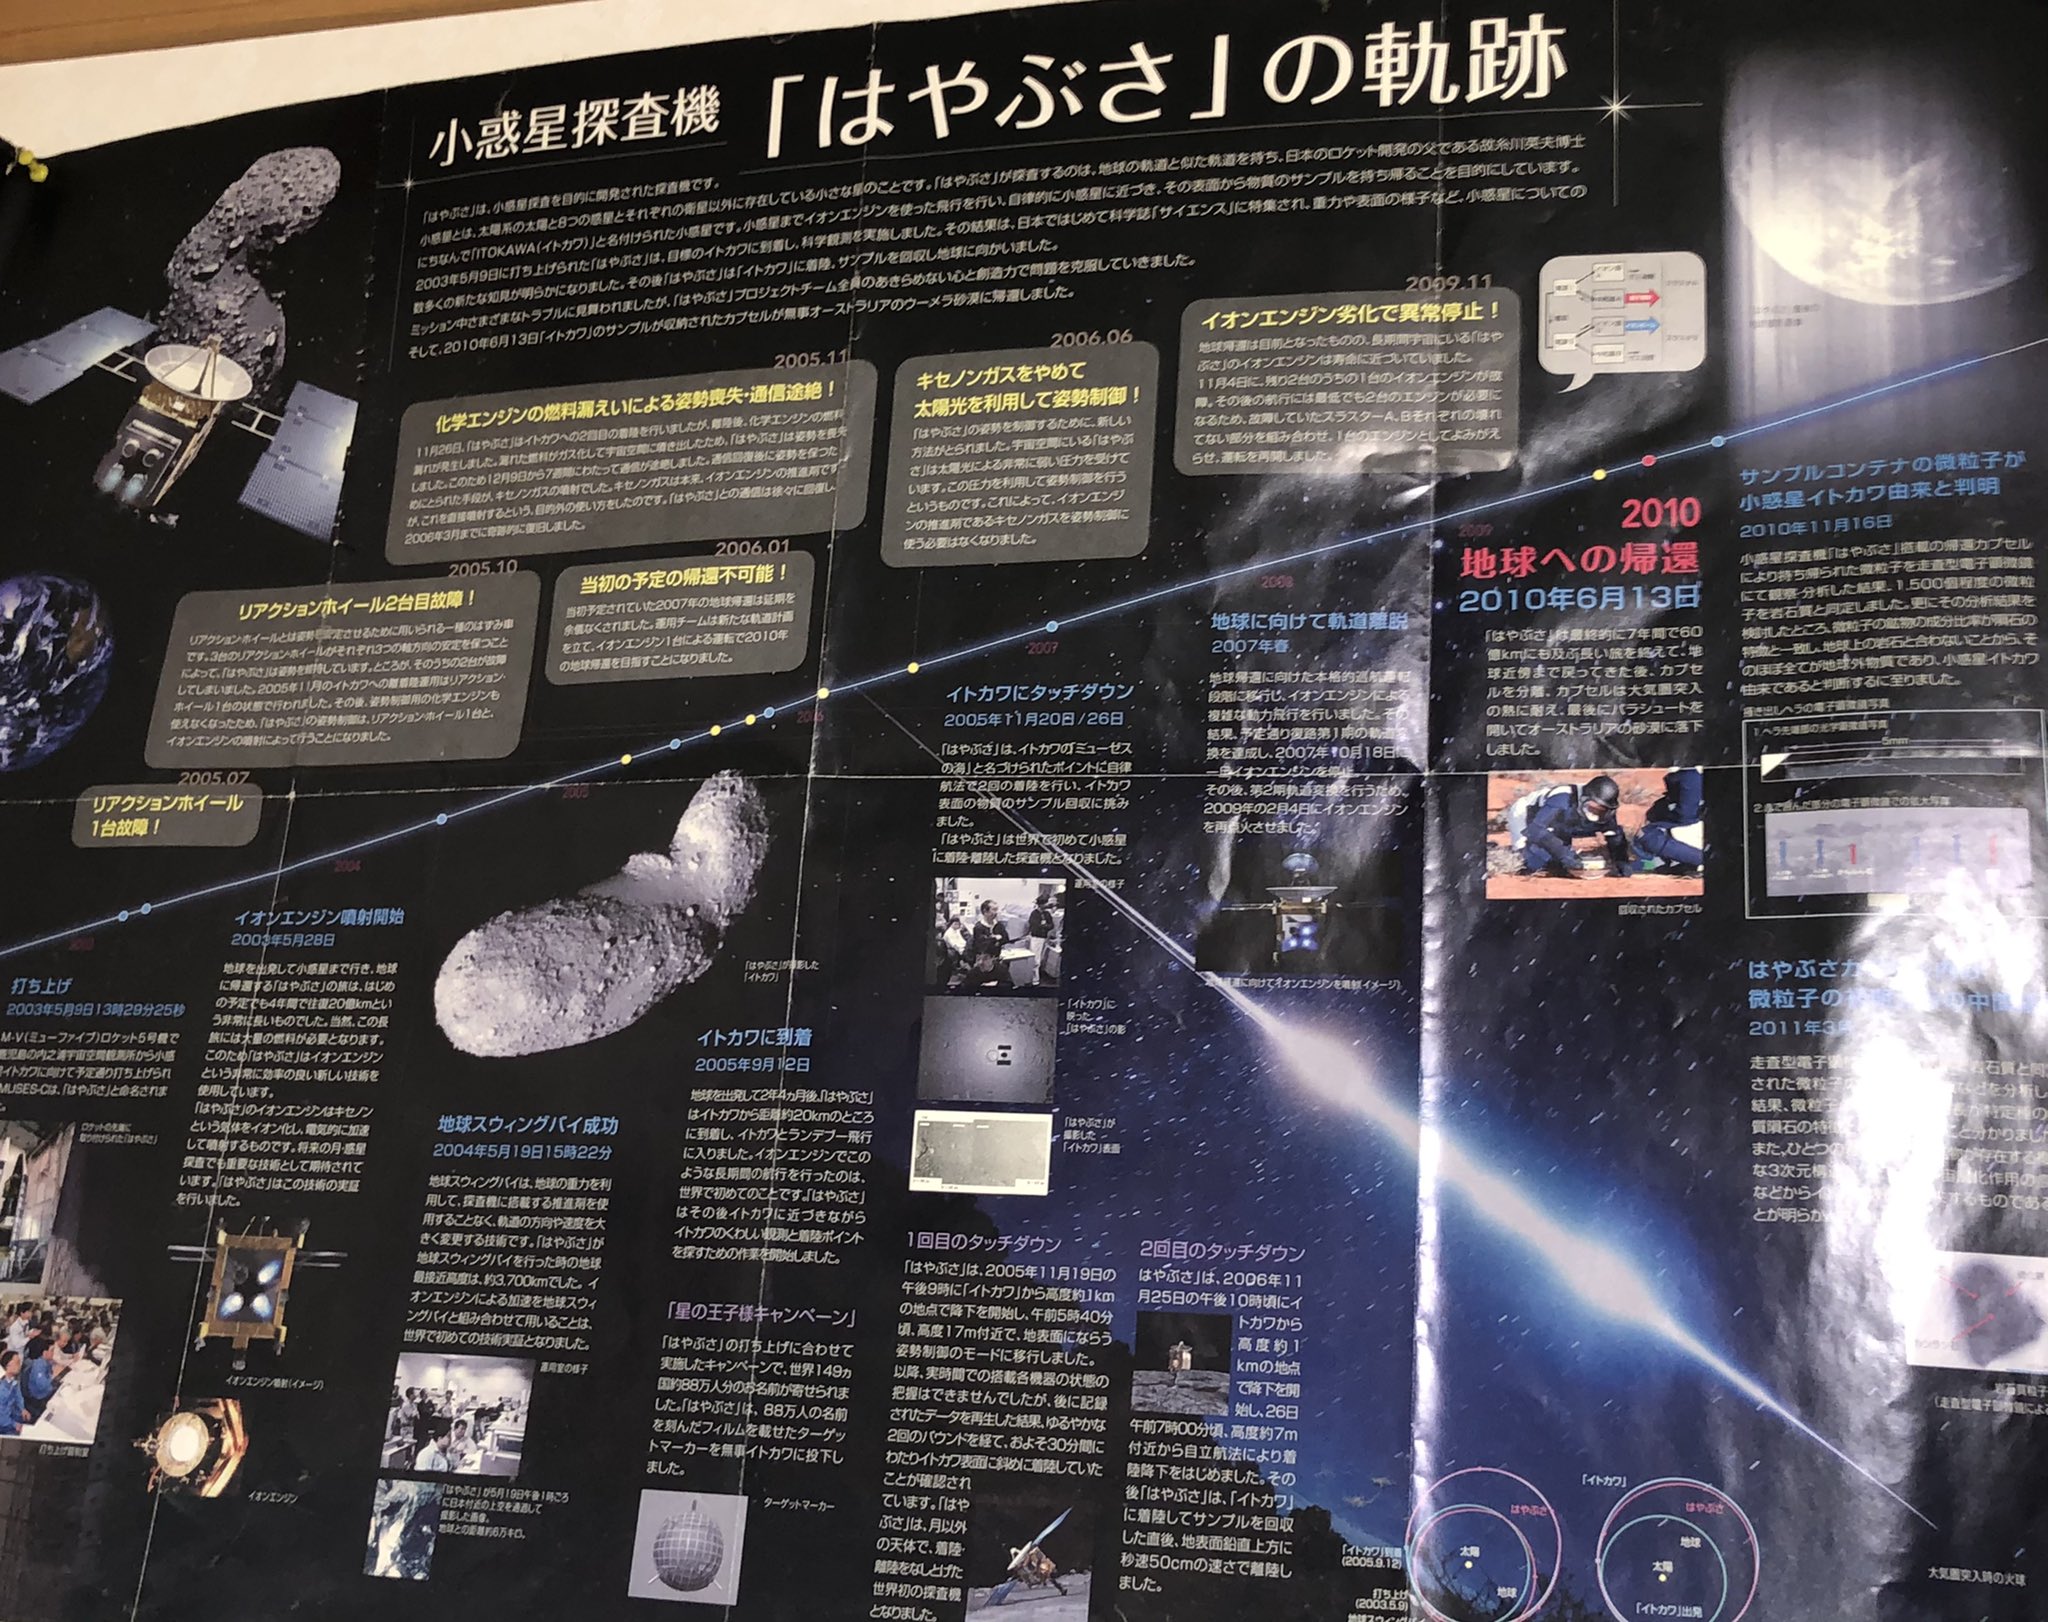 小惑星探査機 はやぶさ２ 先の写真で はやぶさ初号機のラストショットを思い出した方も多いようだ あの写真には修正前と修正後の2種類があるのはご存知だろうか 修正前の写真が人気なのは知っているが 僕の解釈は はやぶさが見せてくれた写真